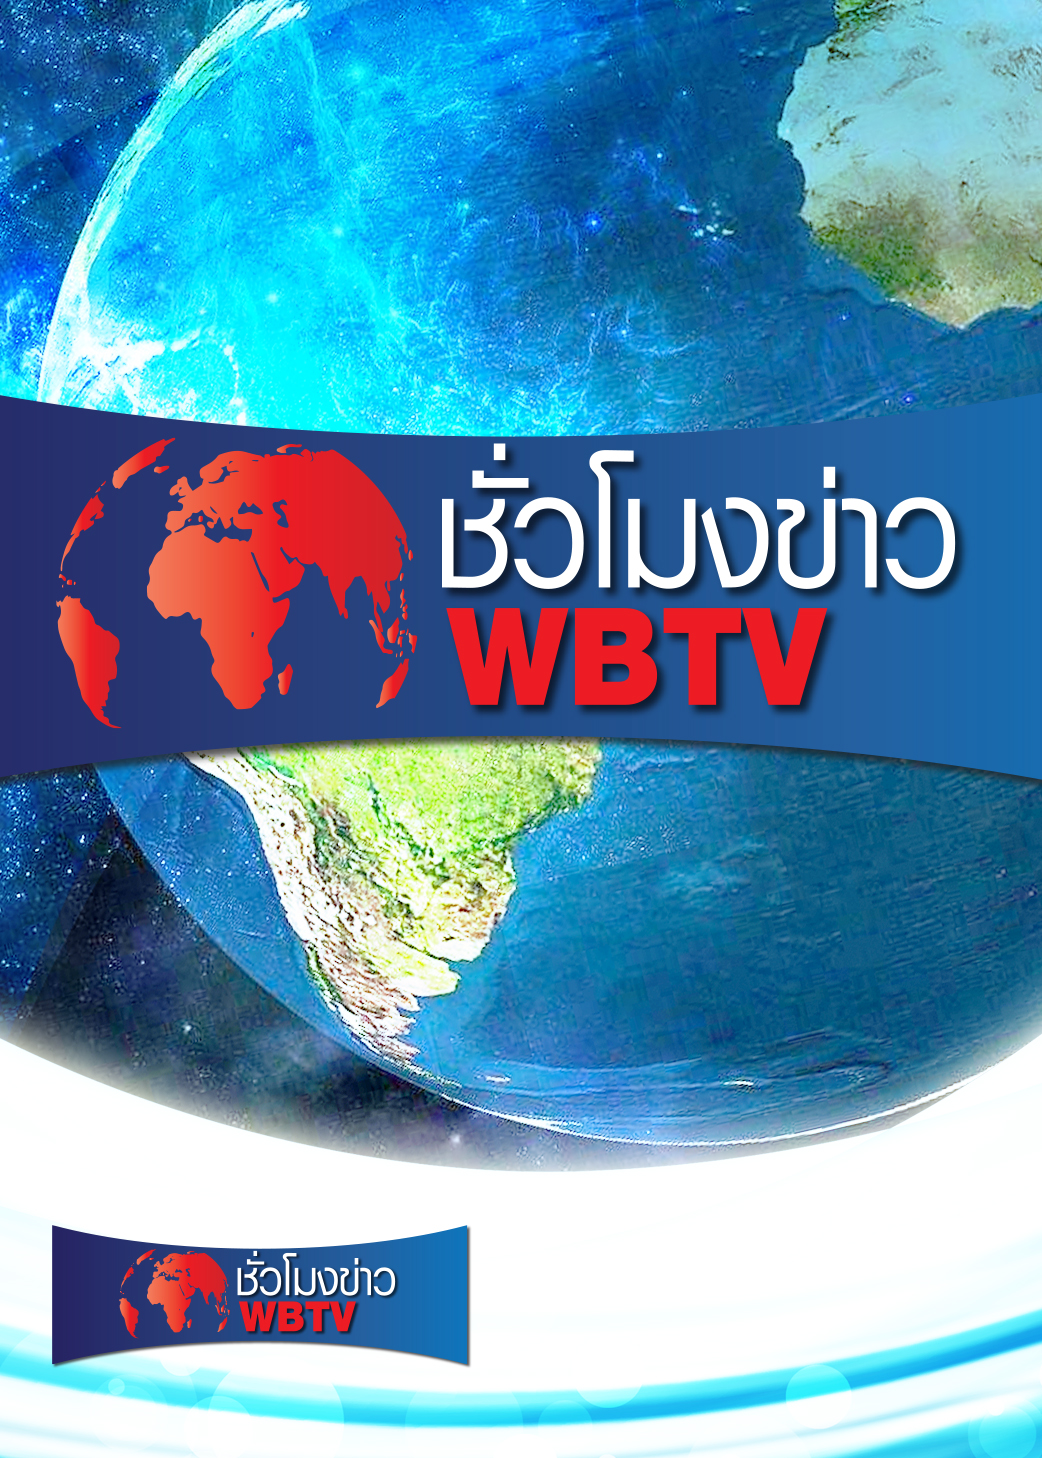 ชั่วโมงข่าว WBTV | ออกอากาศวันที่ 5 ก.ค. เม.ย. 64